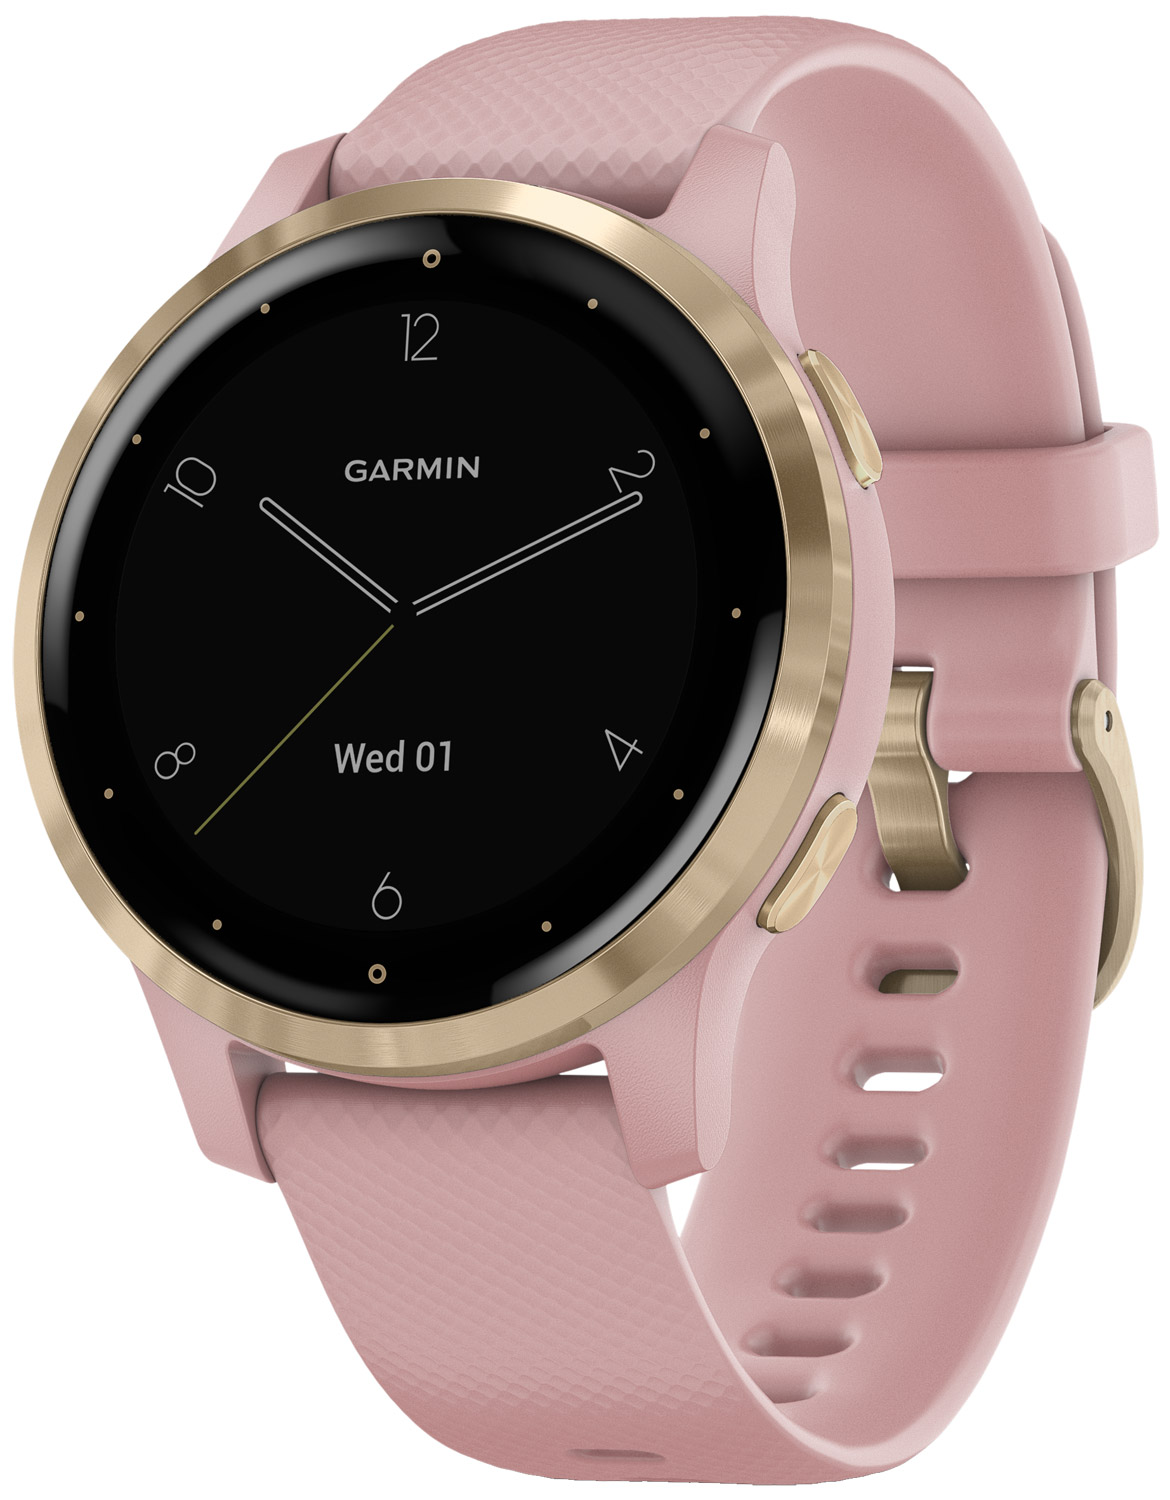 GARMIN Smartwatch günstig kaufen • uhrcenter Uhren Shop